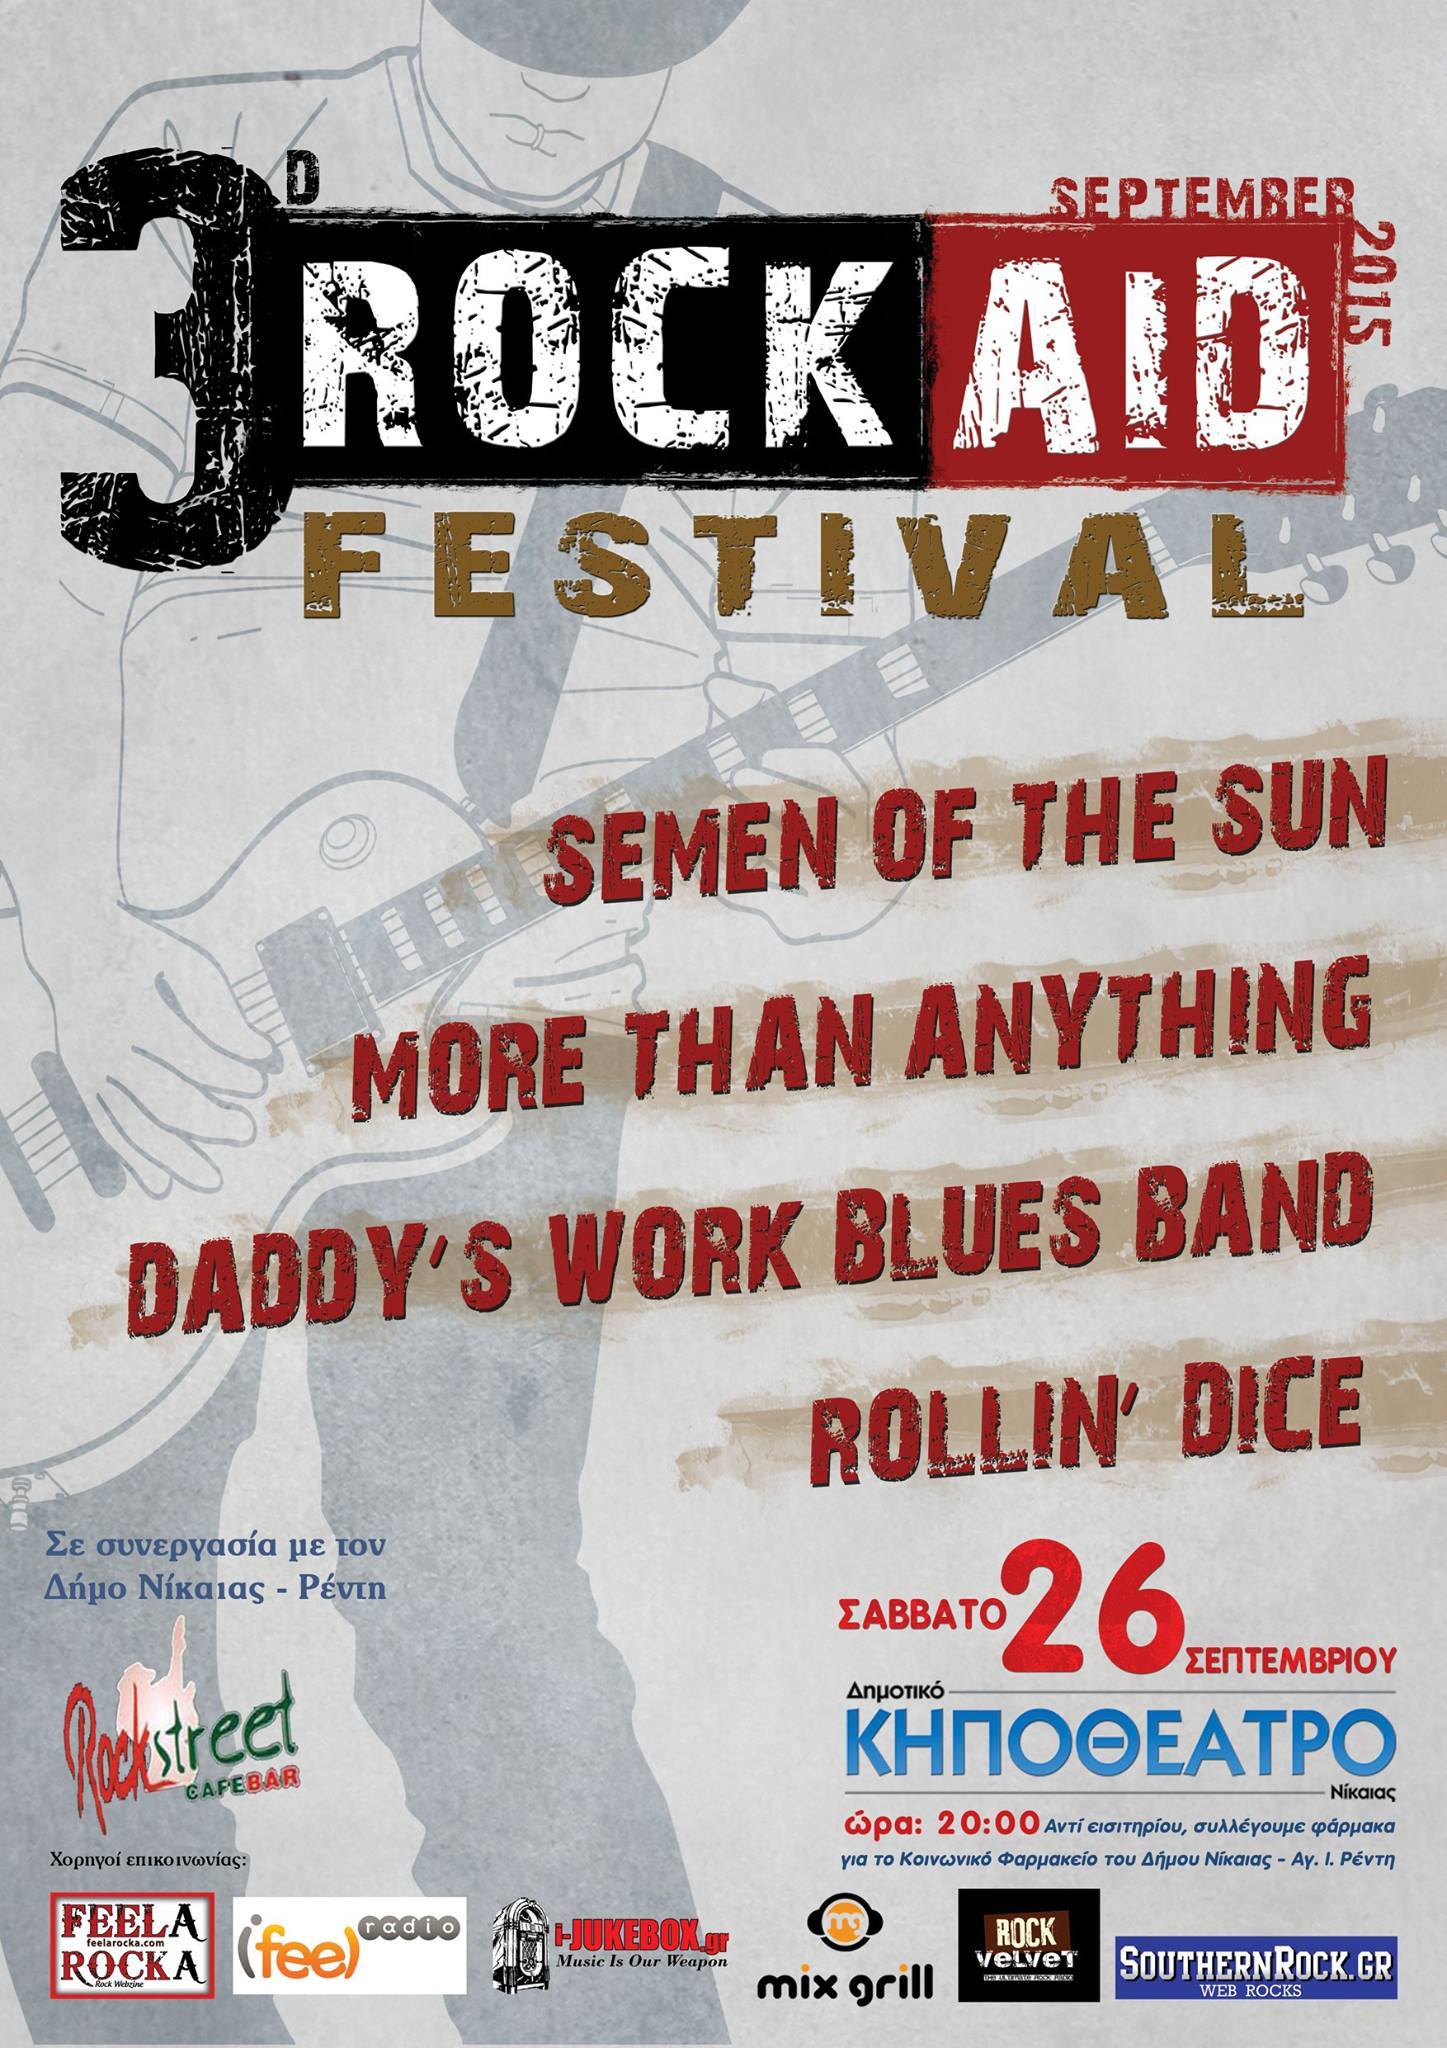 To 3d Rock Aid festival στο Δημοτικό Κηποθέατρο Νίκαιας